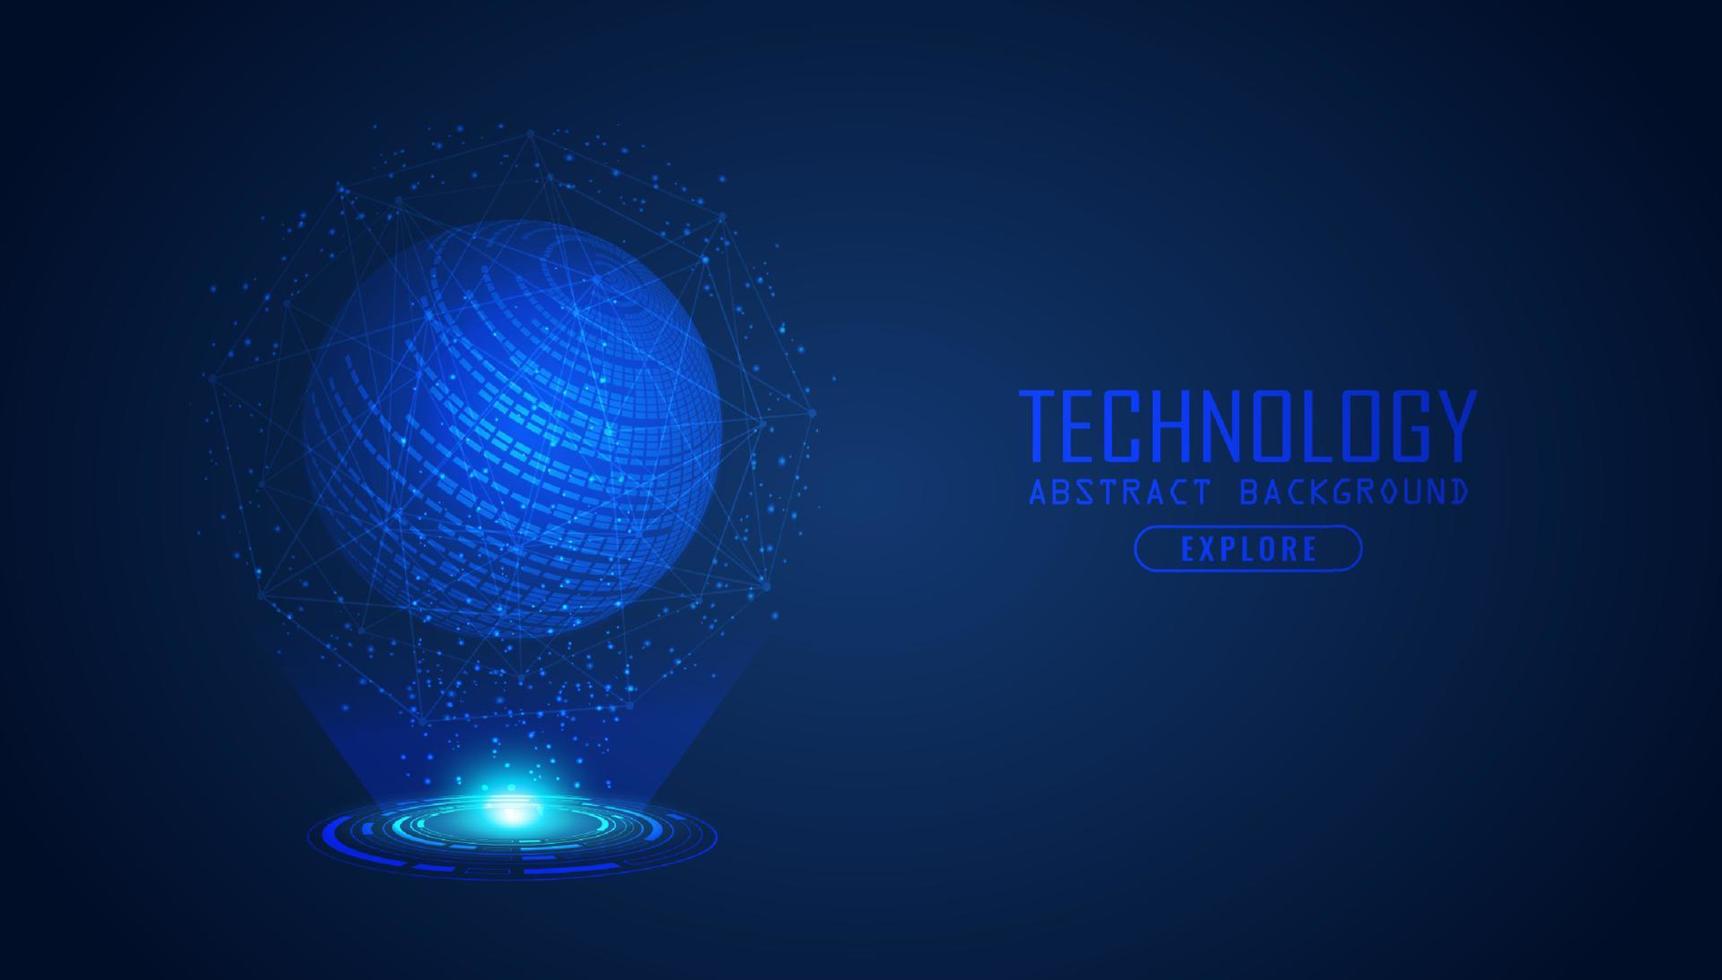 modern holografische wereldbol Aan technologie achtergrond vector